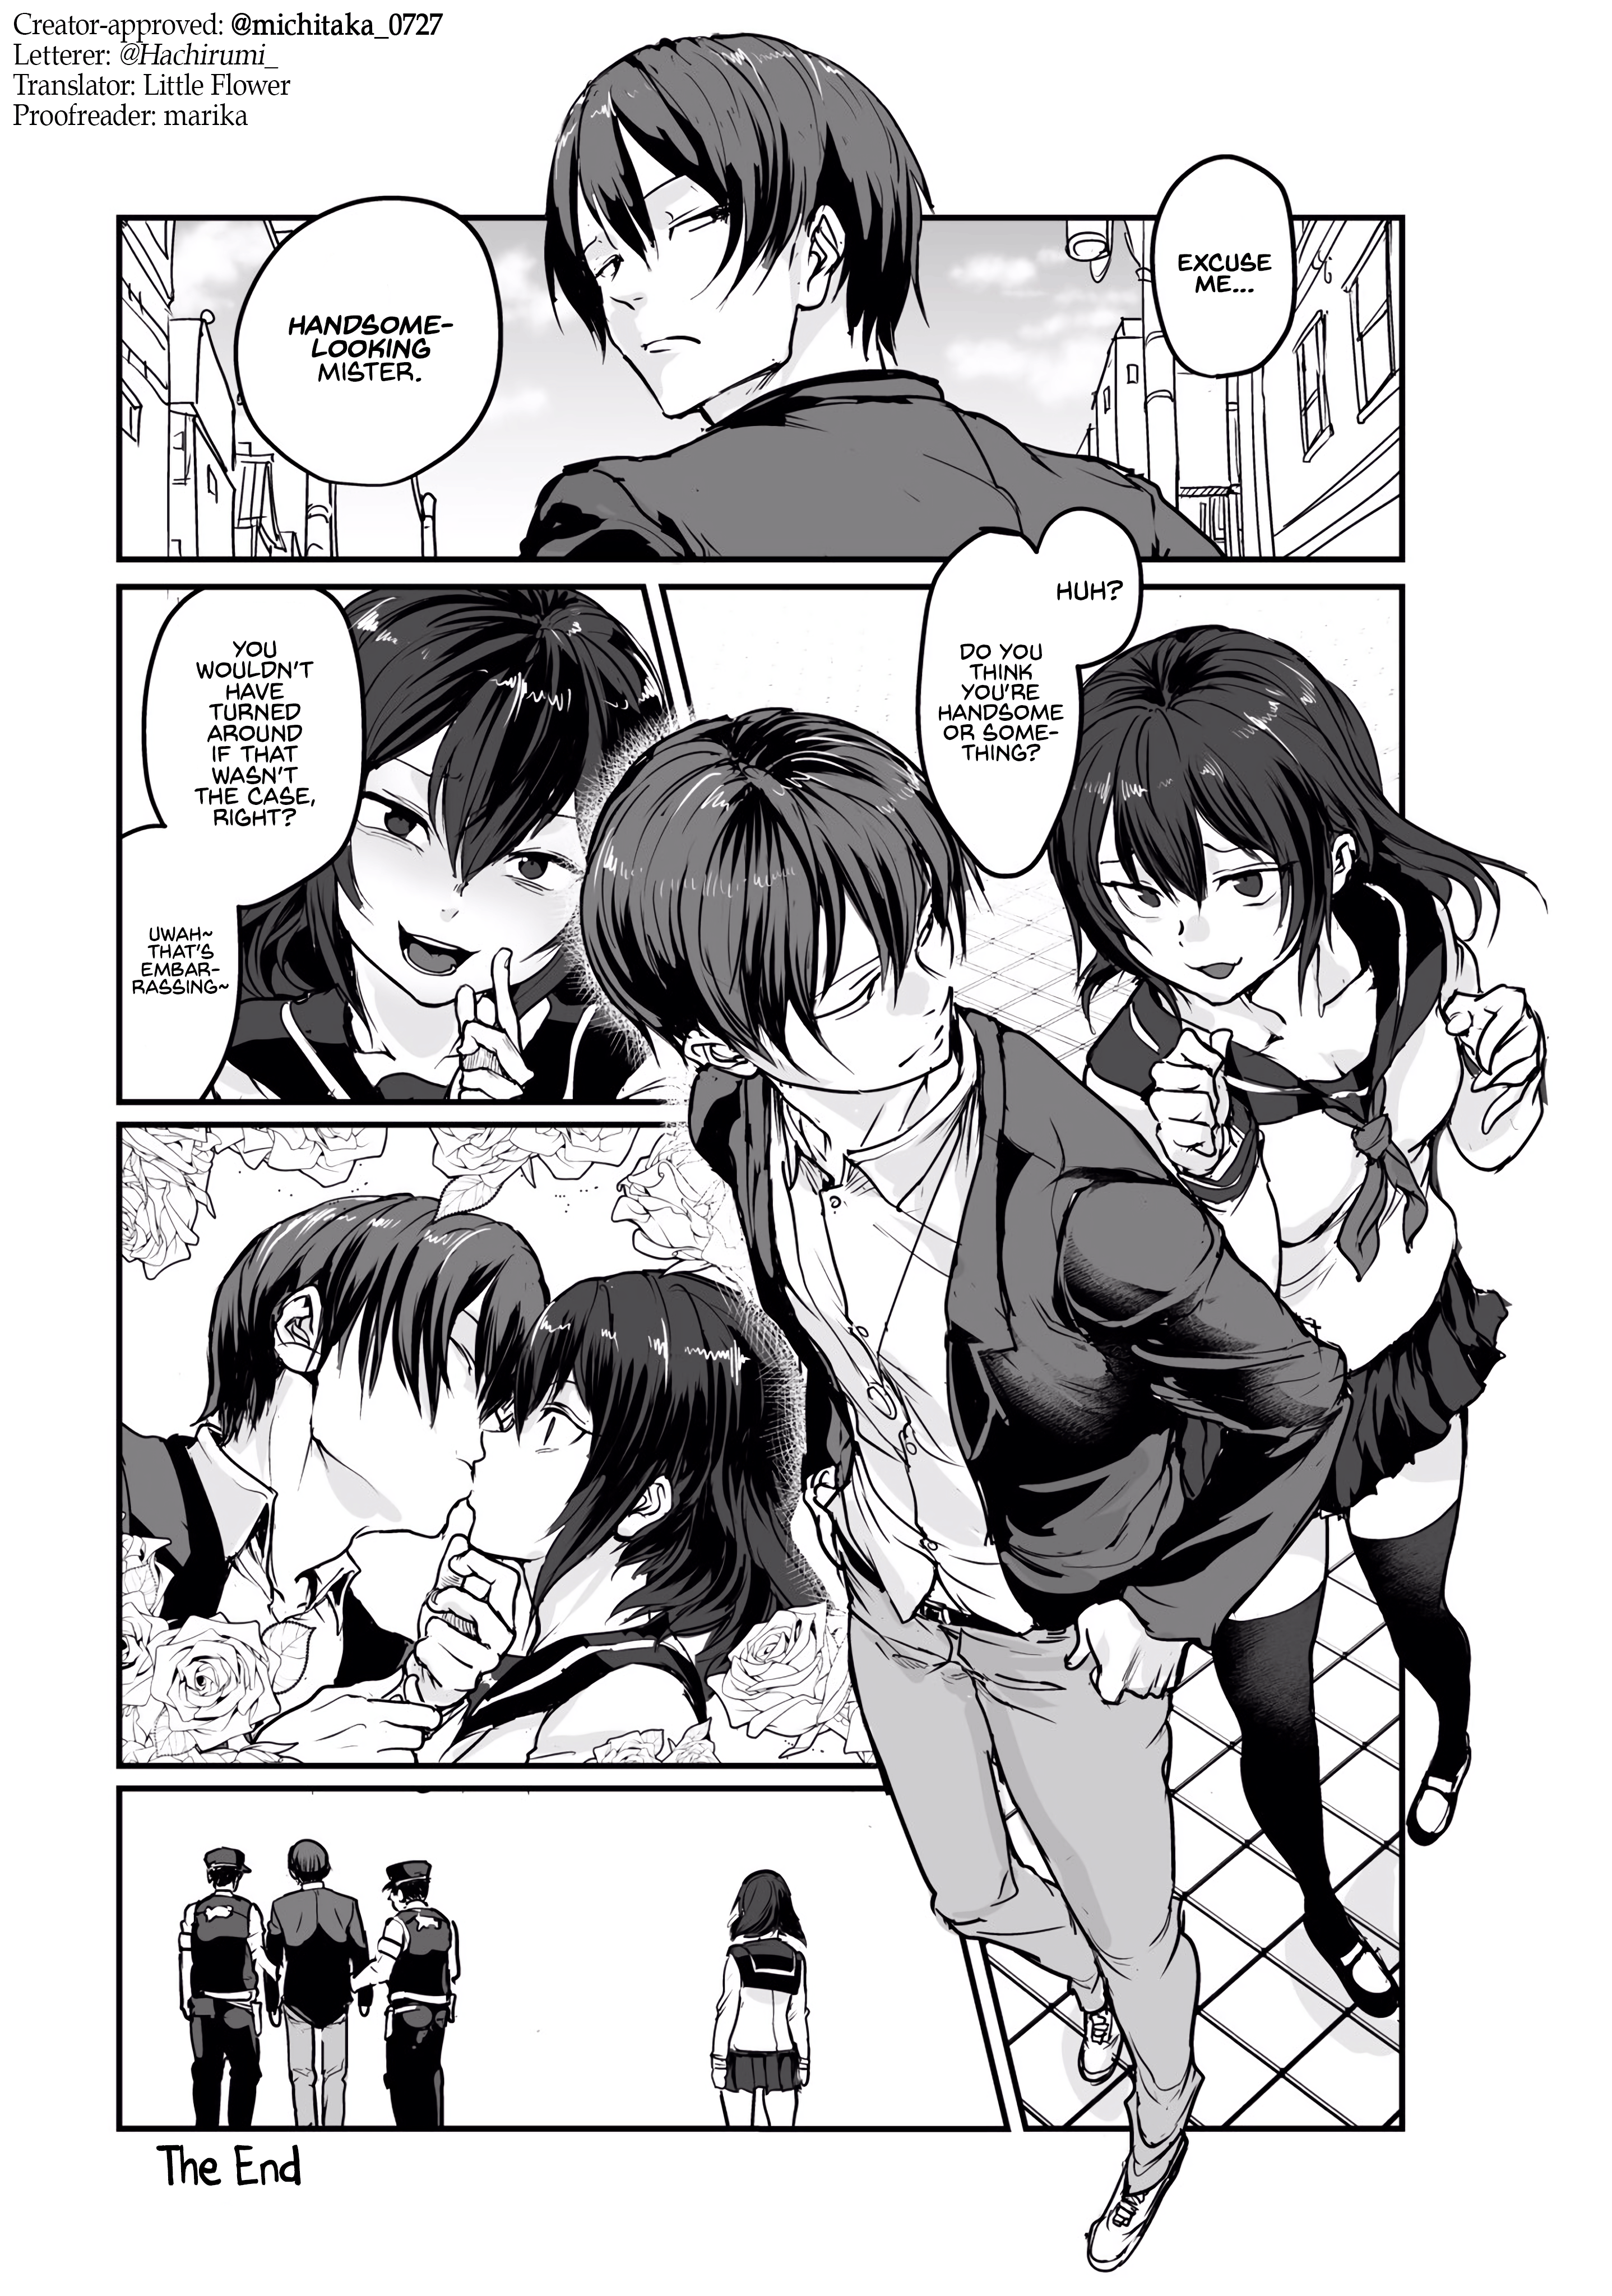 One-Page Manga manga